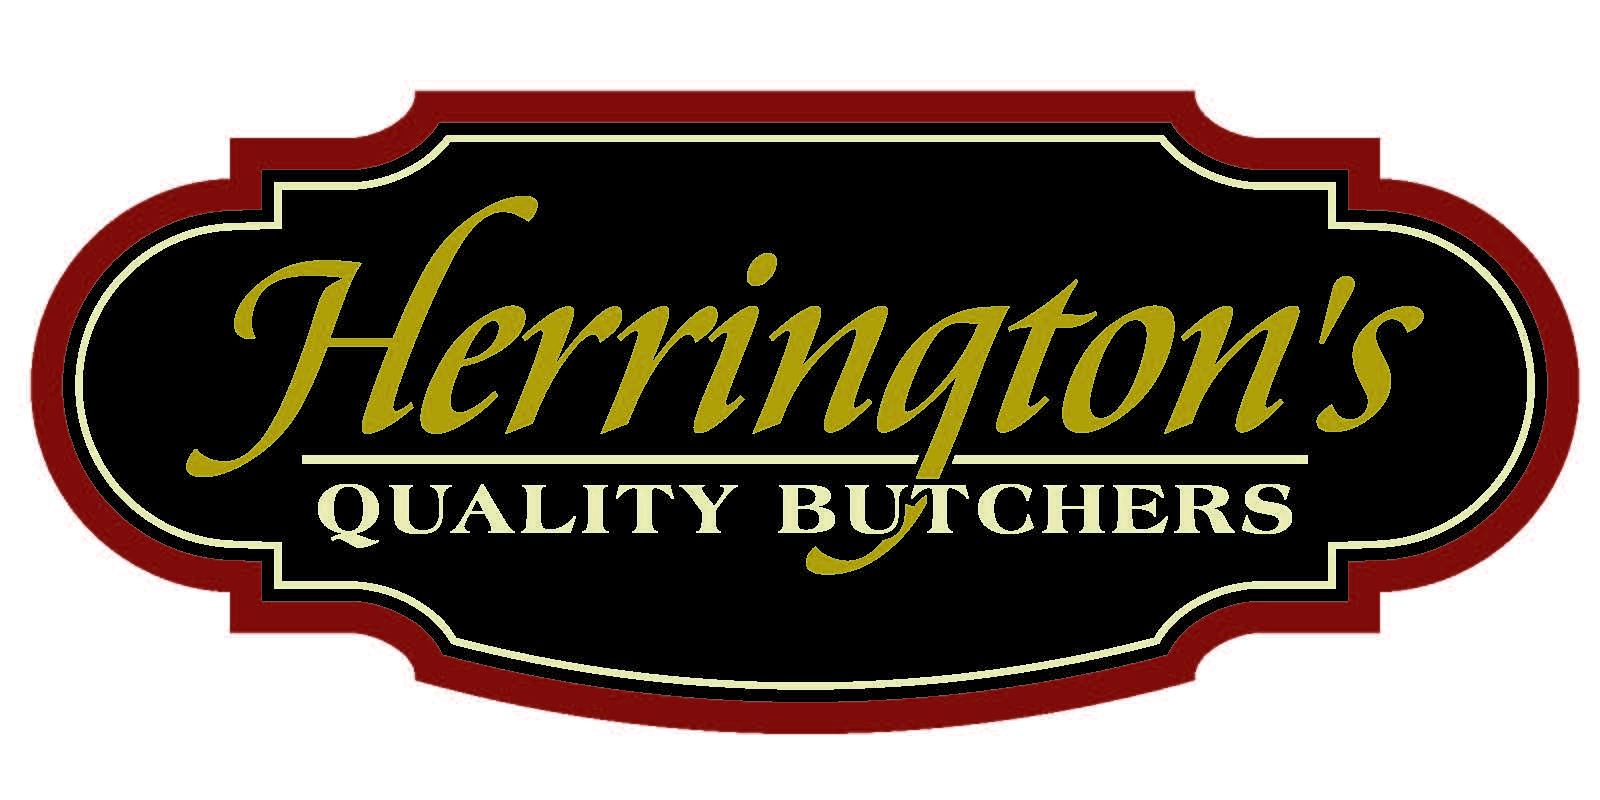 Herrington's Quality Butchers